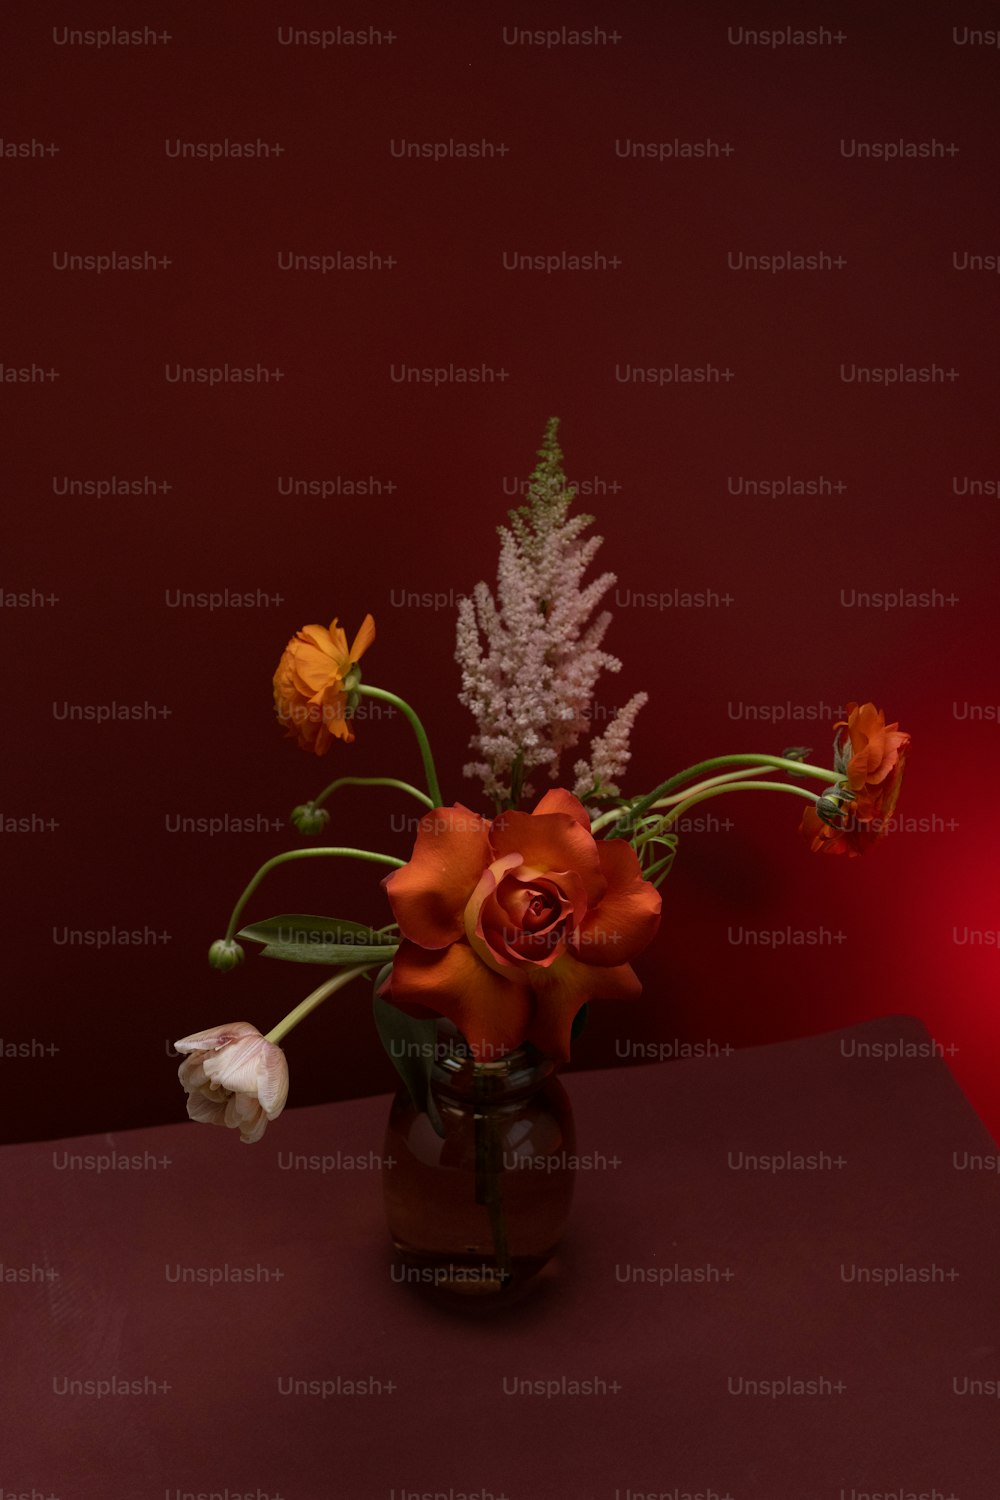 テ��ーブルの上に花でいっぱいの花瓶